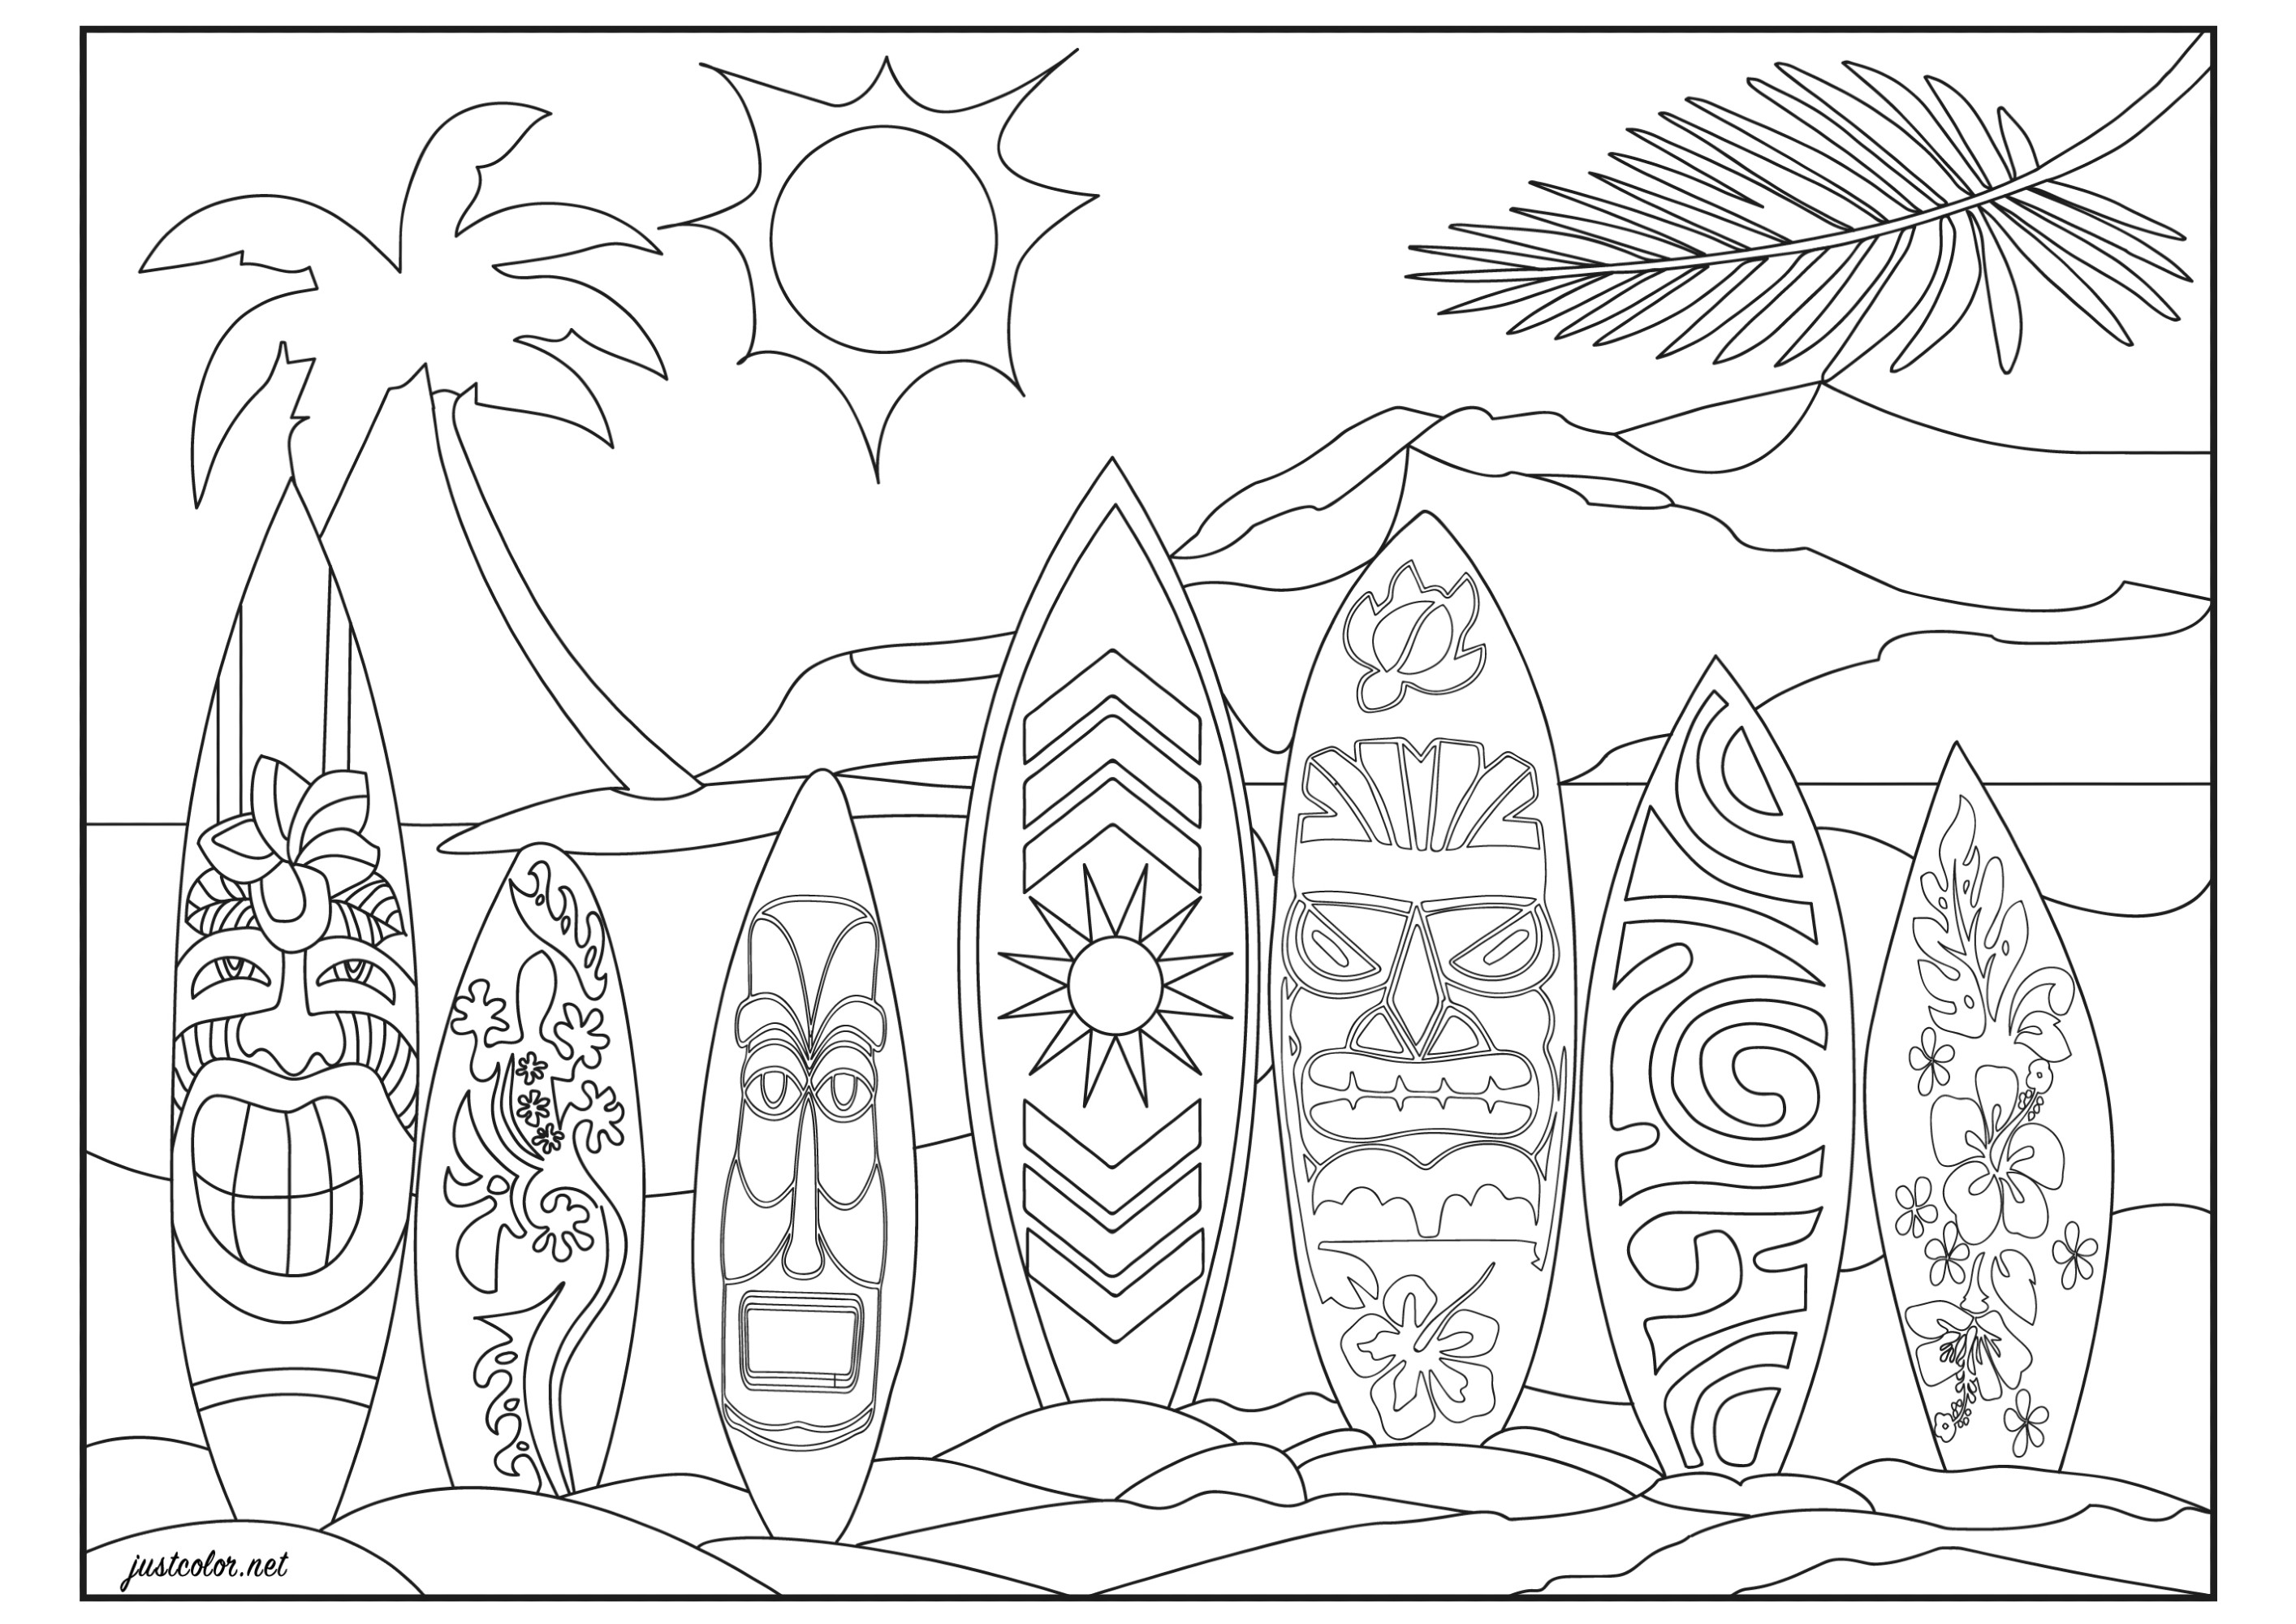 Sur une plage d’Honolulu (Hawaï, Pacifique). Alignement de surfs avec motifs tribaux hawaïens, maoris, vintages et floraux (fleurs d'hibiscus tropicales)Prêt pour surfer la vague parfaite ?Coloriage original avec en arrière plan une montagne volcanique et un cocotier, Artiste : Morgan